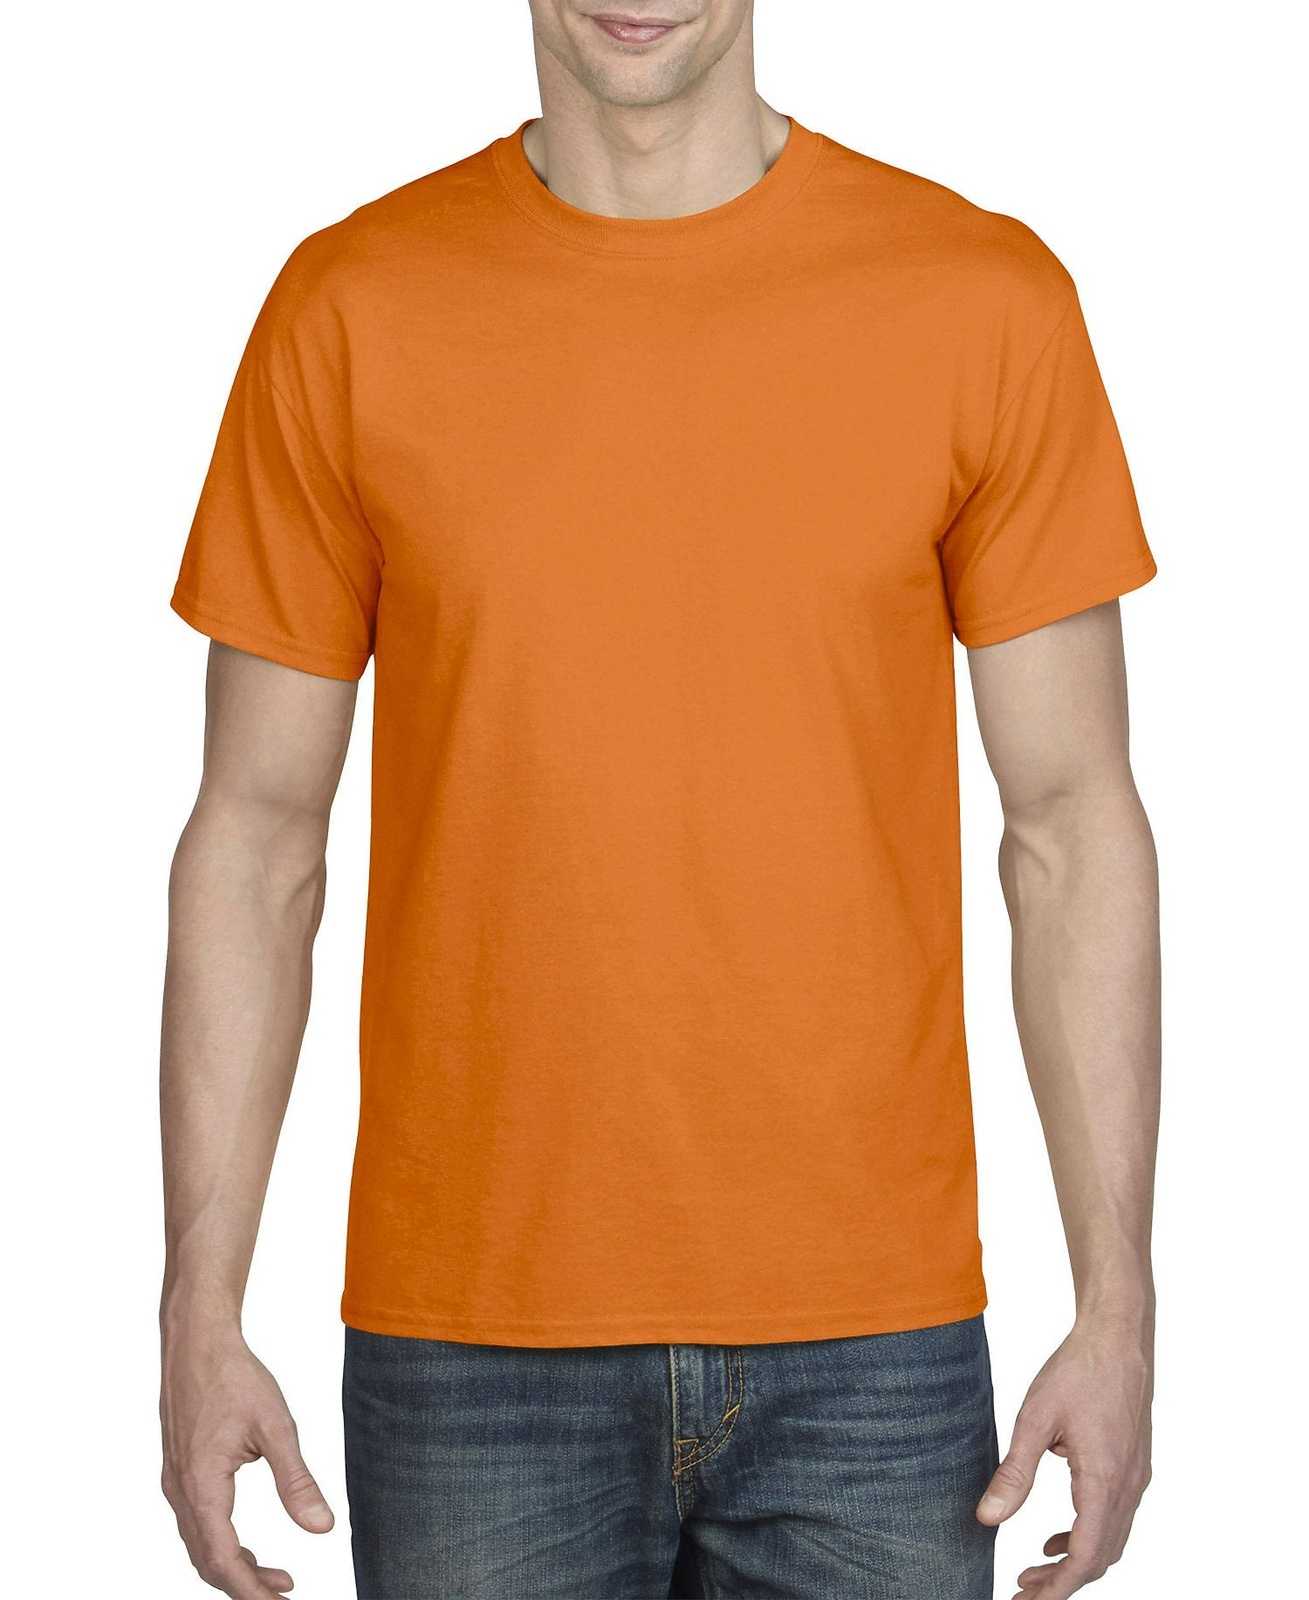 Gildan 8000 Dryblend 50 Cotton/50 Poly T-Shirt - S Orange - HIT a Double